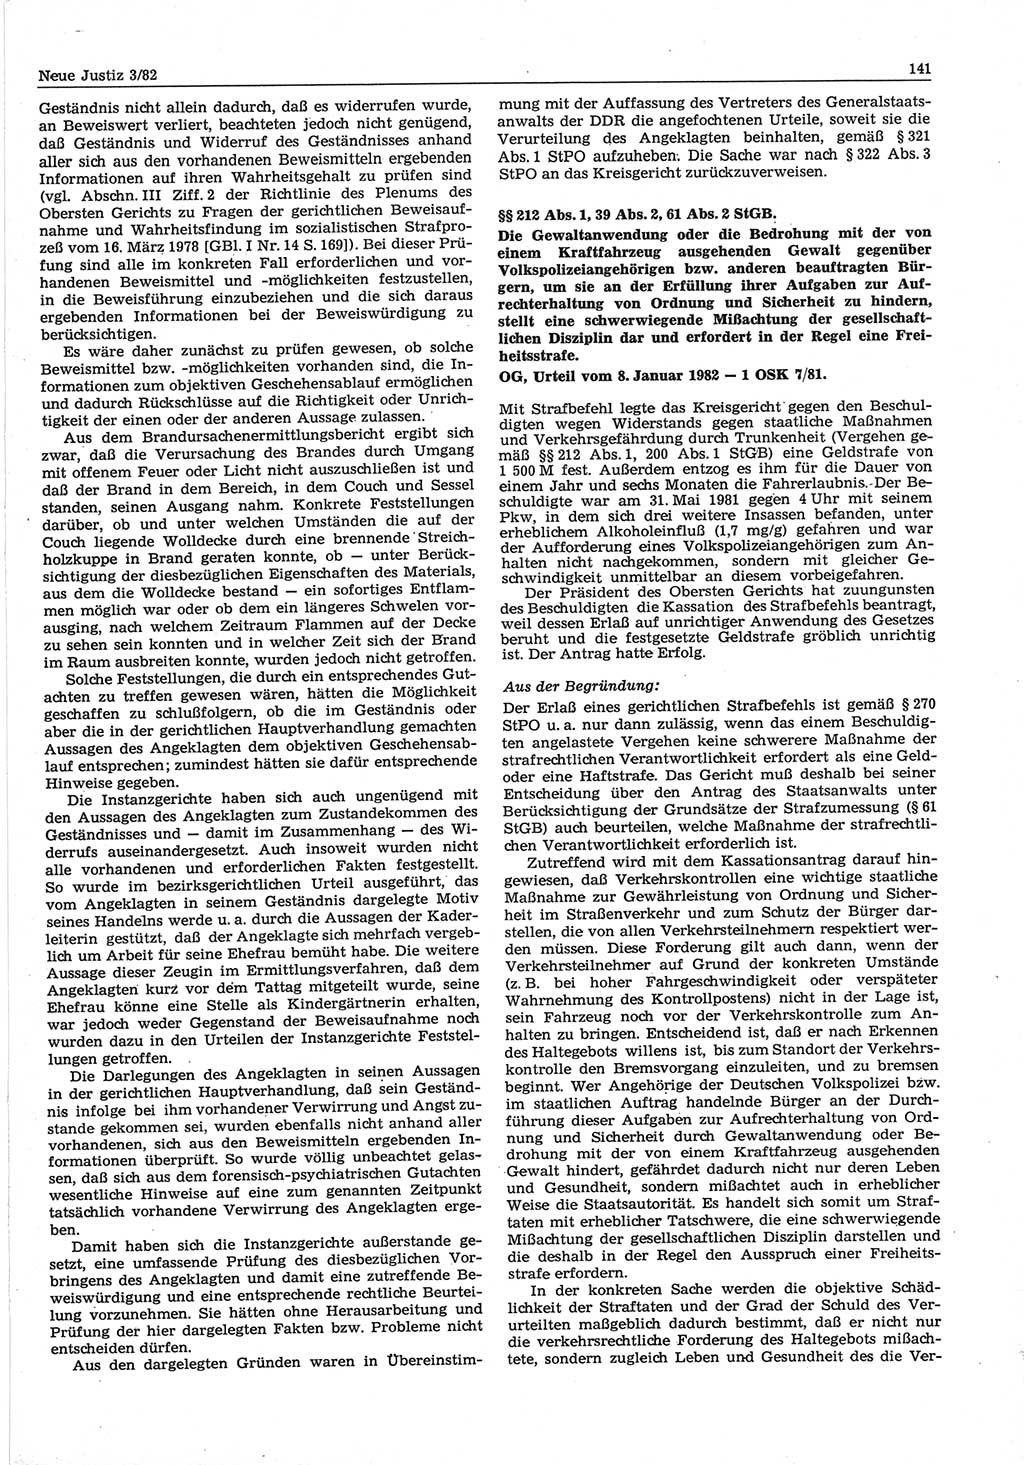 Neue Justiz (NJ), Zeitschrift für sozialistisches Recht und Gesetzlichkeit [Deutsche Demokratische Republik (DDR)], 36. Jahrgang 1982, Seite 141 (NJ DDR 1982, S. 141)